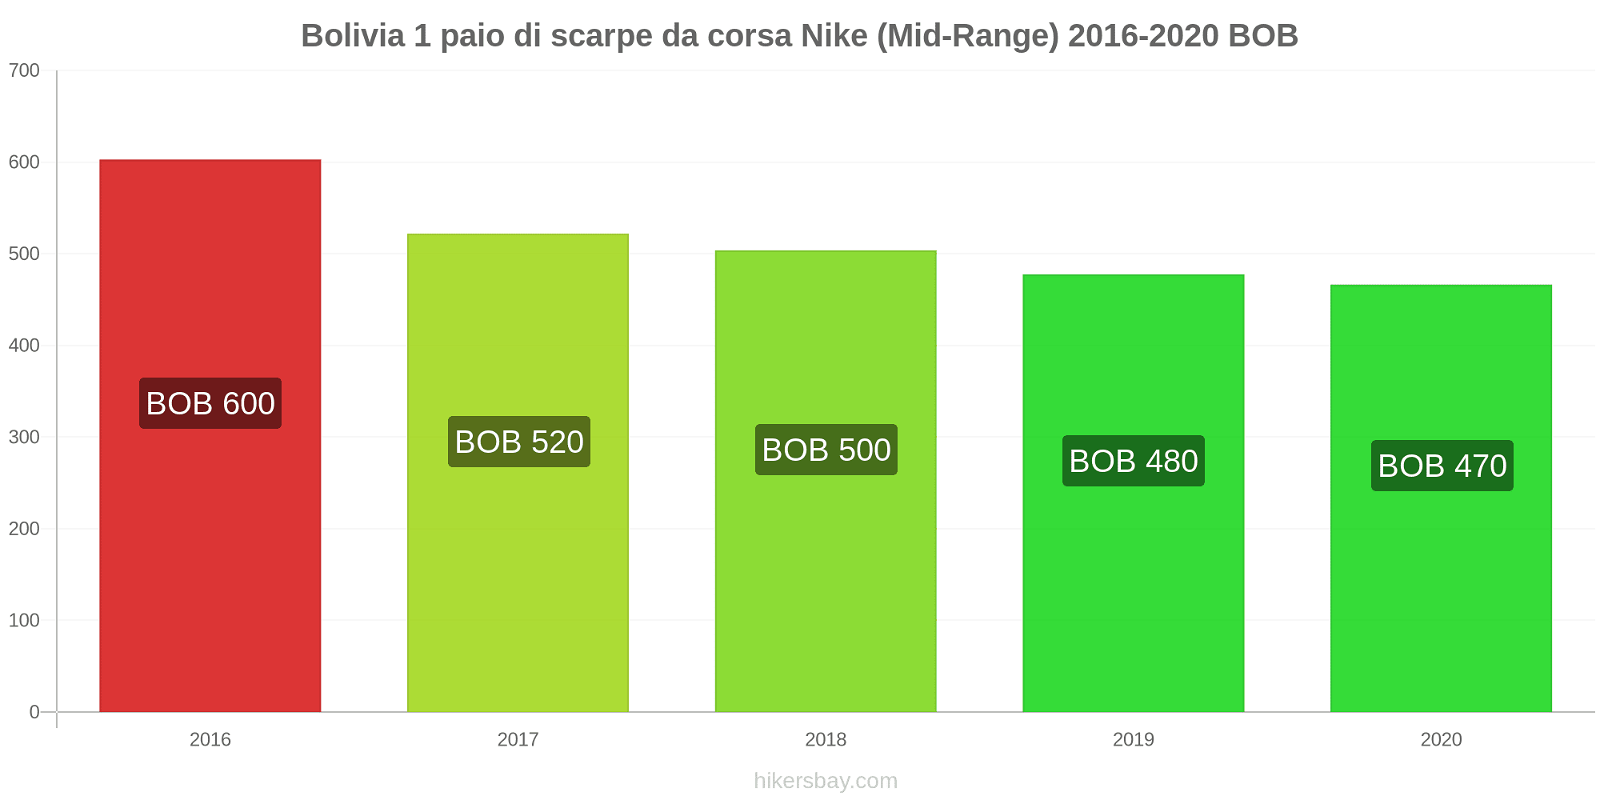 Bolivia variazioni di prezzo 1 paio di scarpe da corsa Nike (simile) hikersbay.com